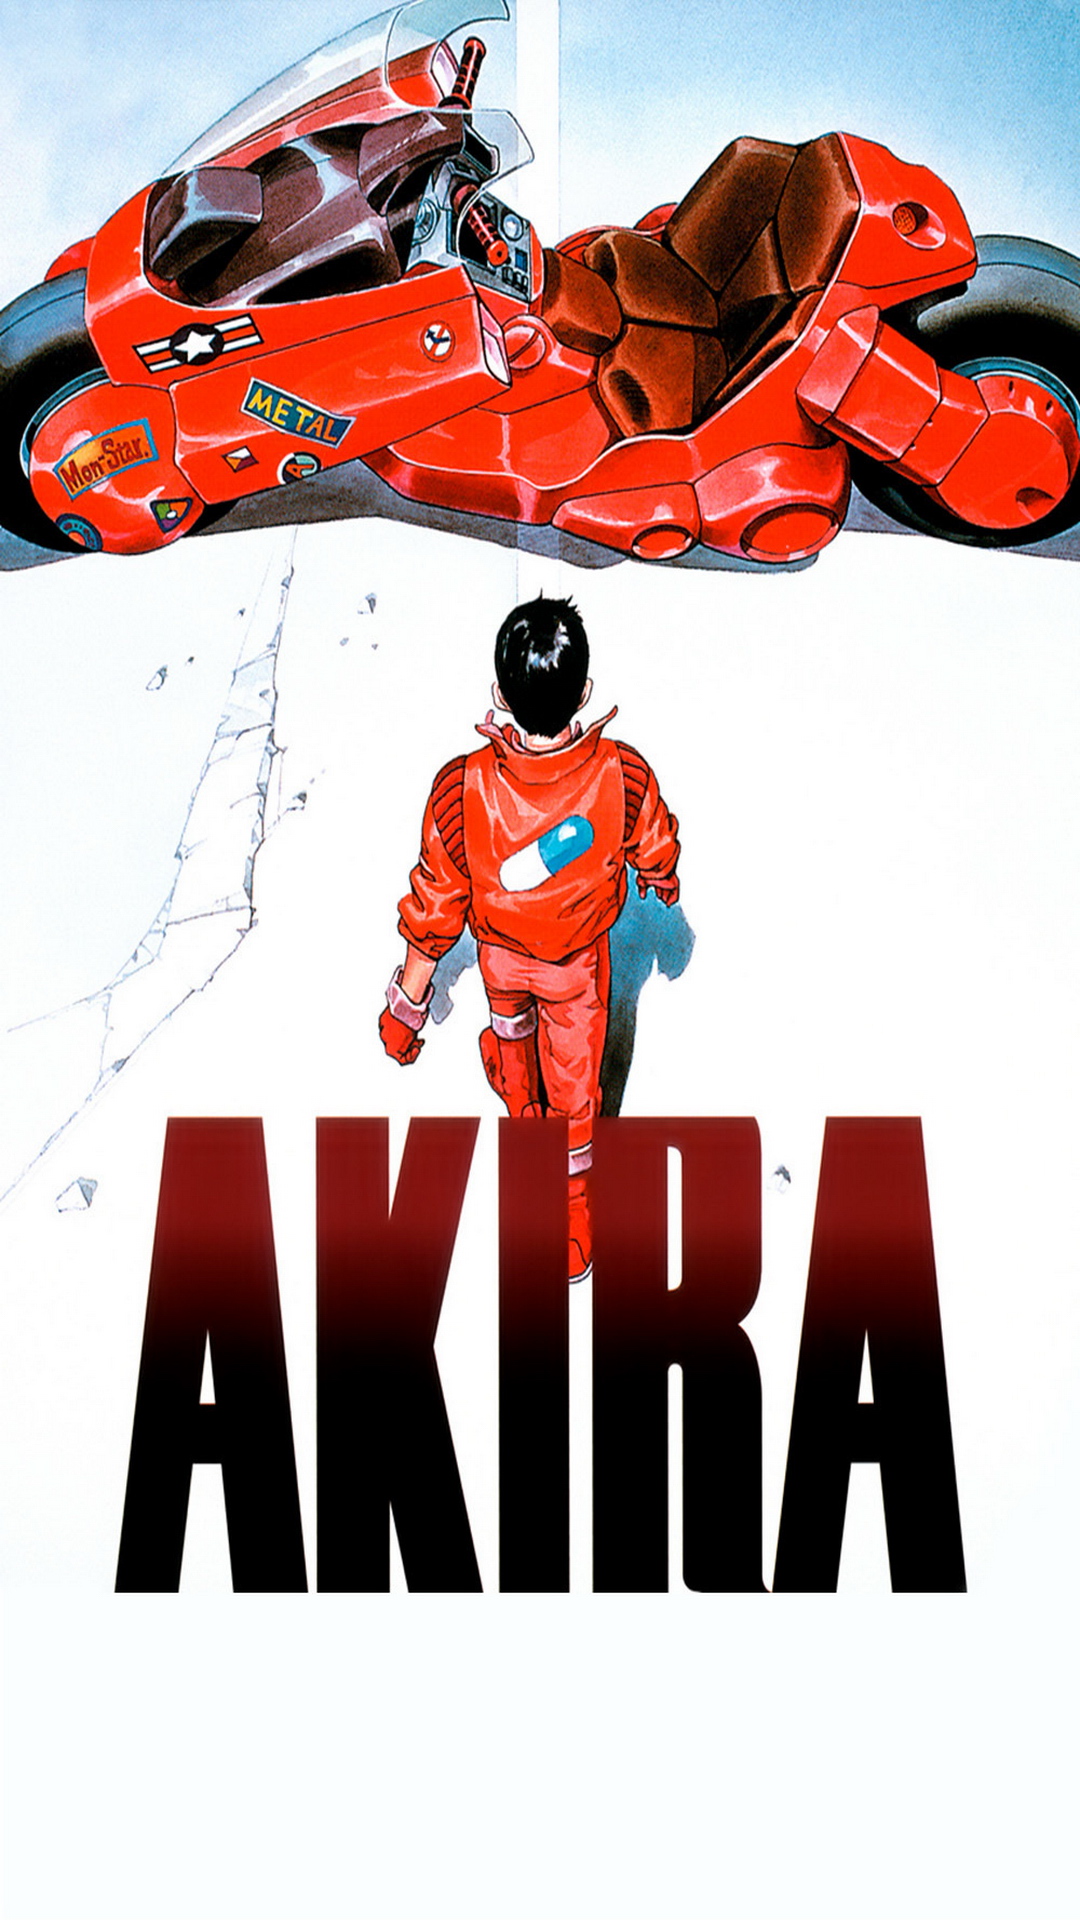 Akira 漫画 の画像 原寸画像検索